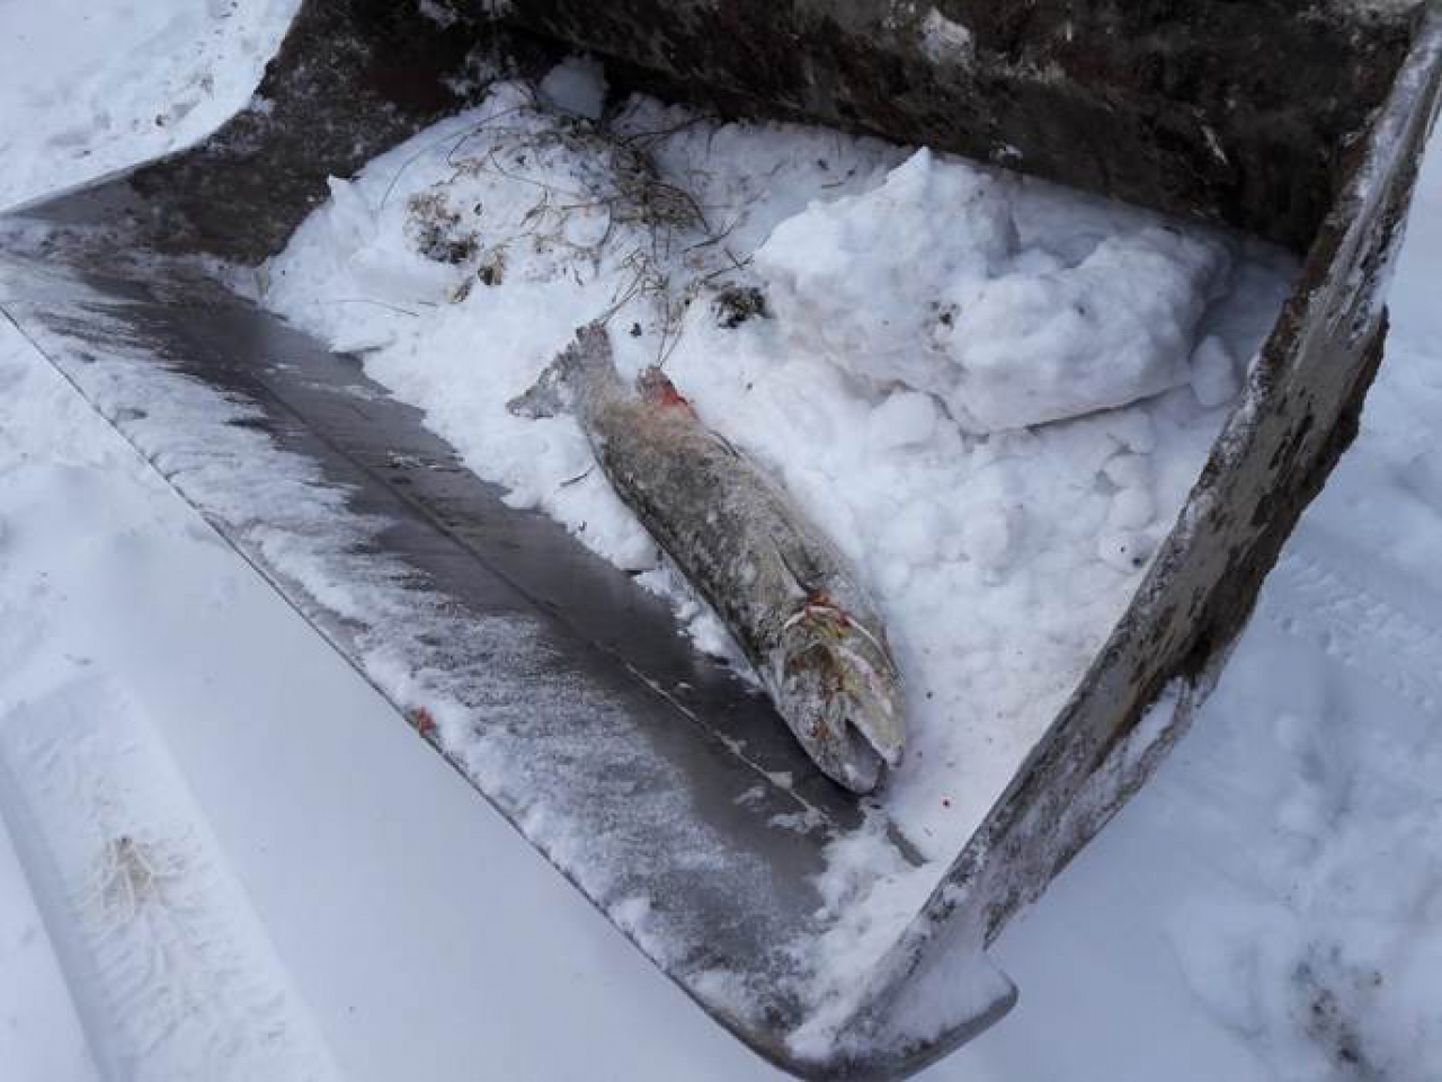 Töömehe poolt Pärnu jõest leitud 8-kilone lõhe, mis Sindis paisu juures väliujula süvendustööde käigus välja tõsteti.